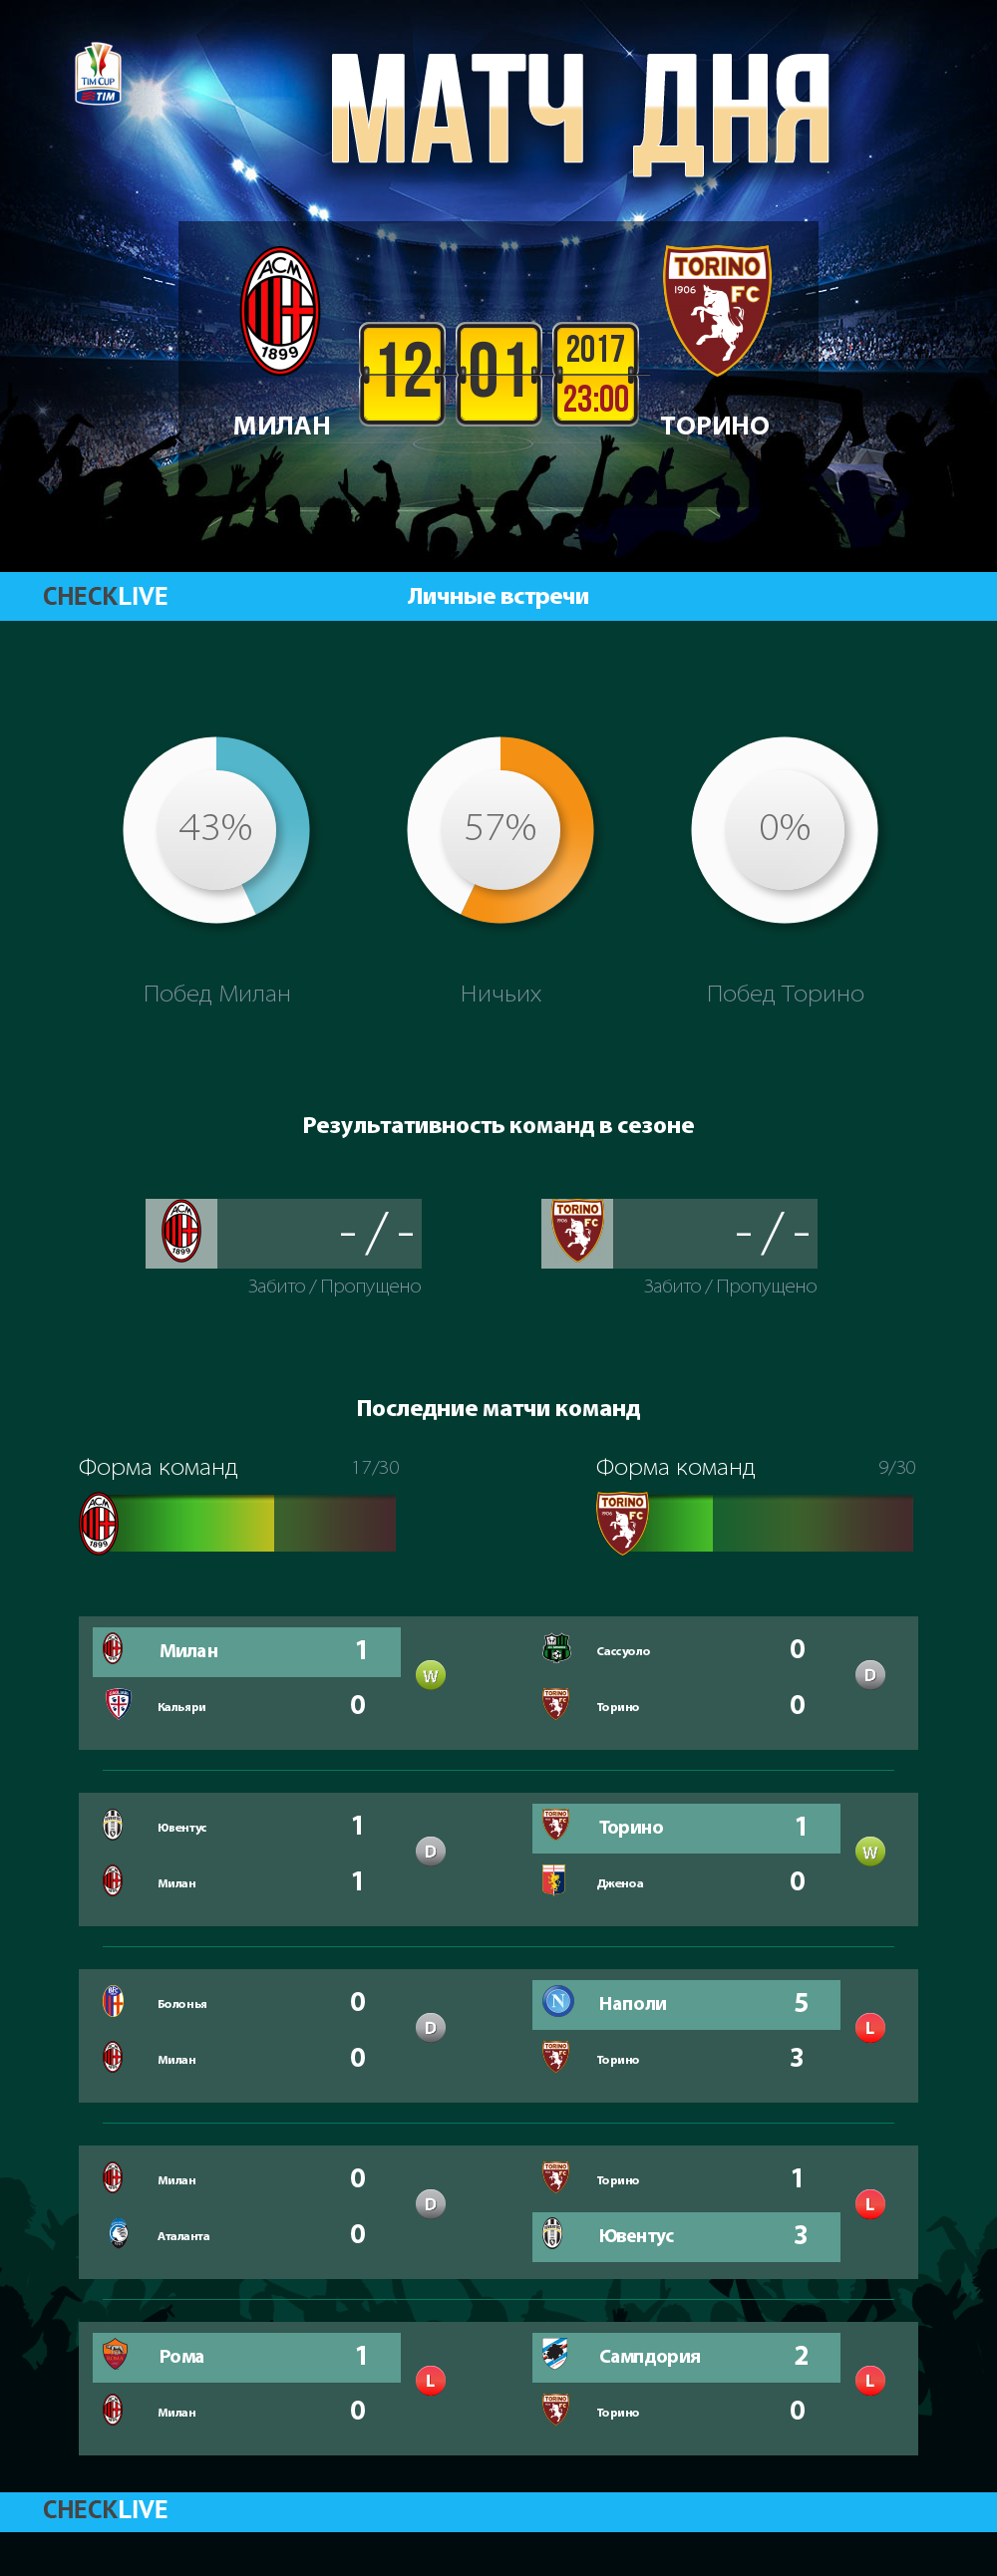 Инфографика Милан и Торино матч дня 12.01.2017